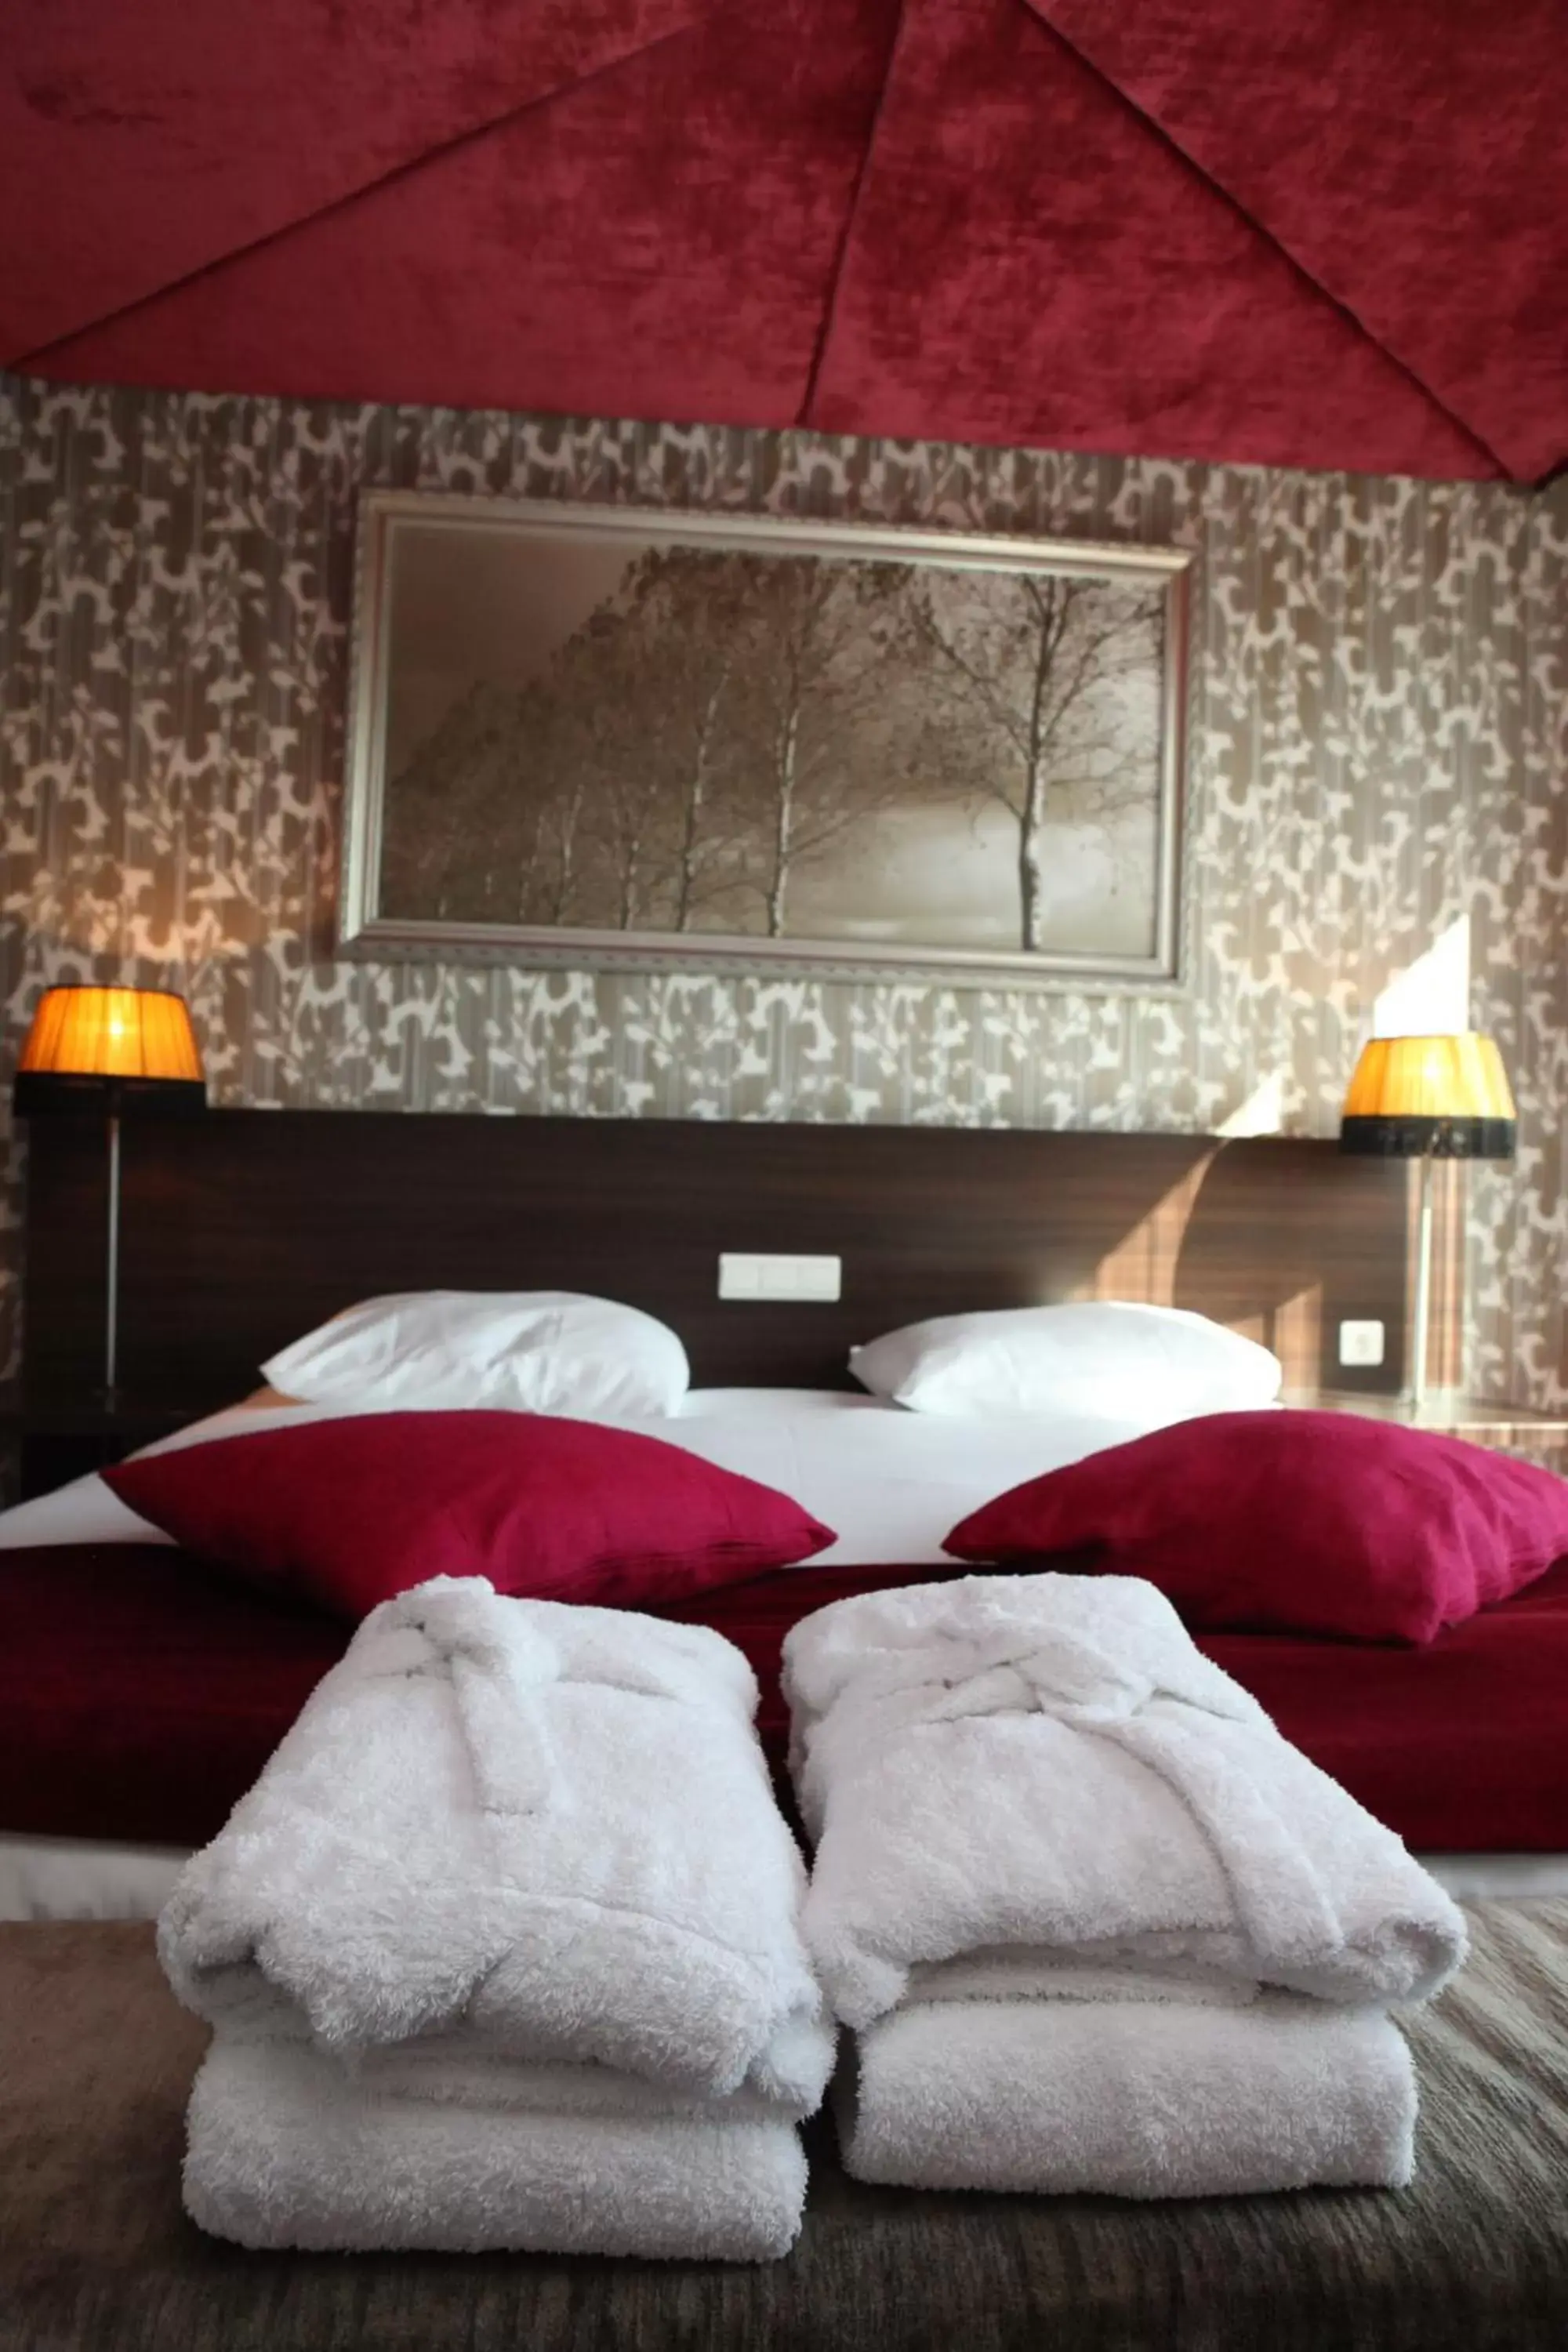 Decorative detail, Bed in Hotel Mijdrecht Marickenland